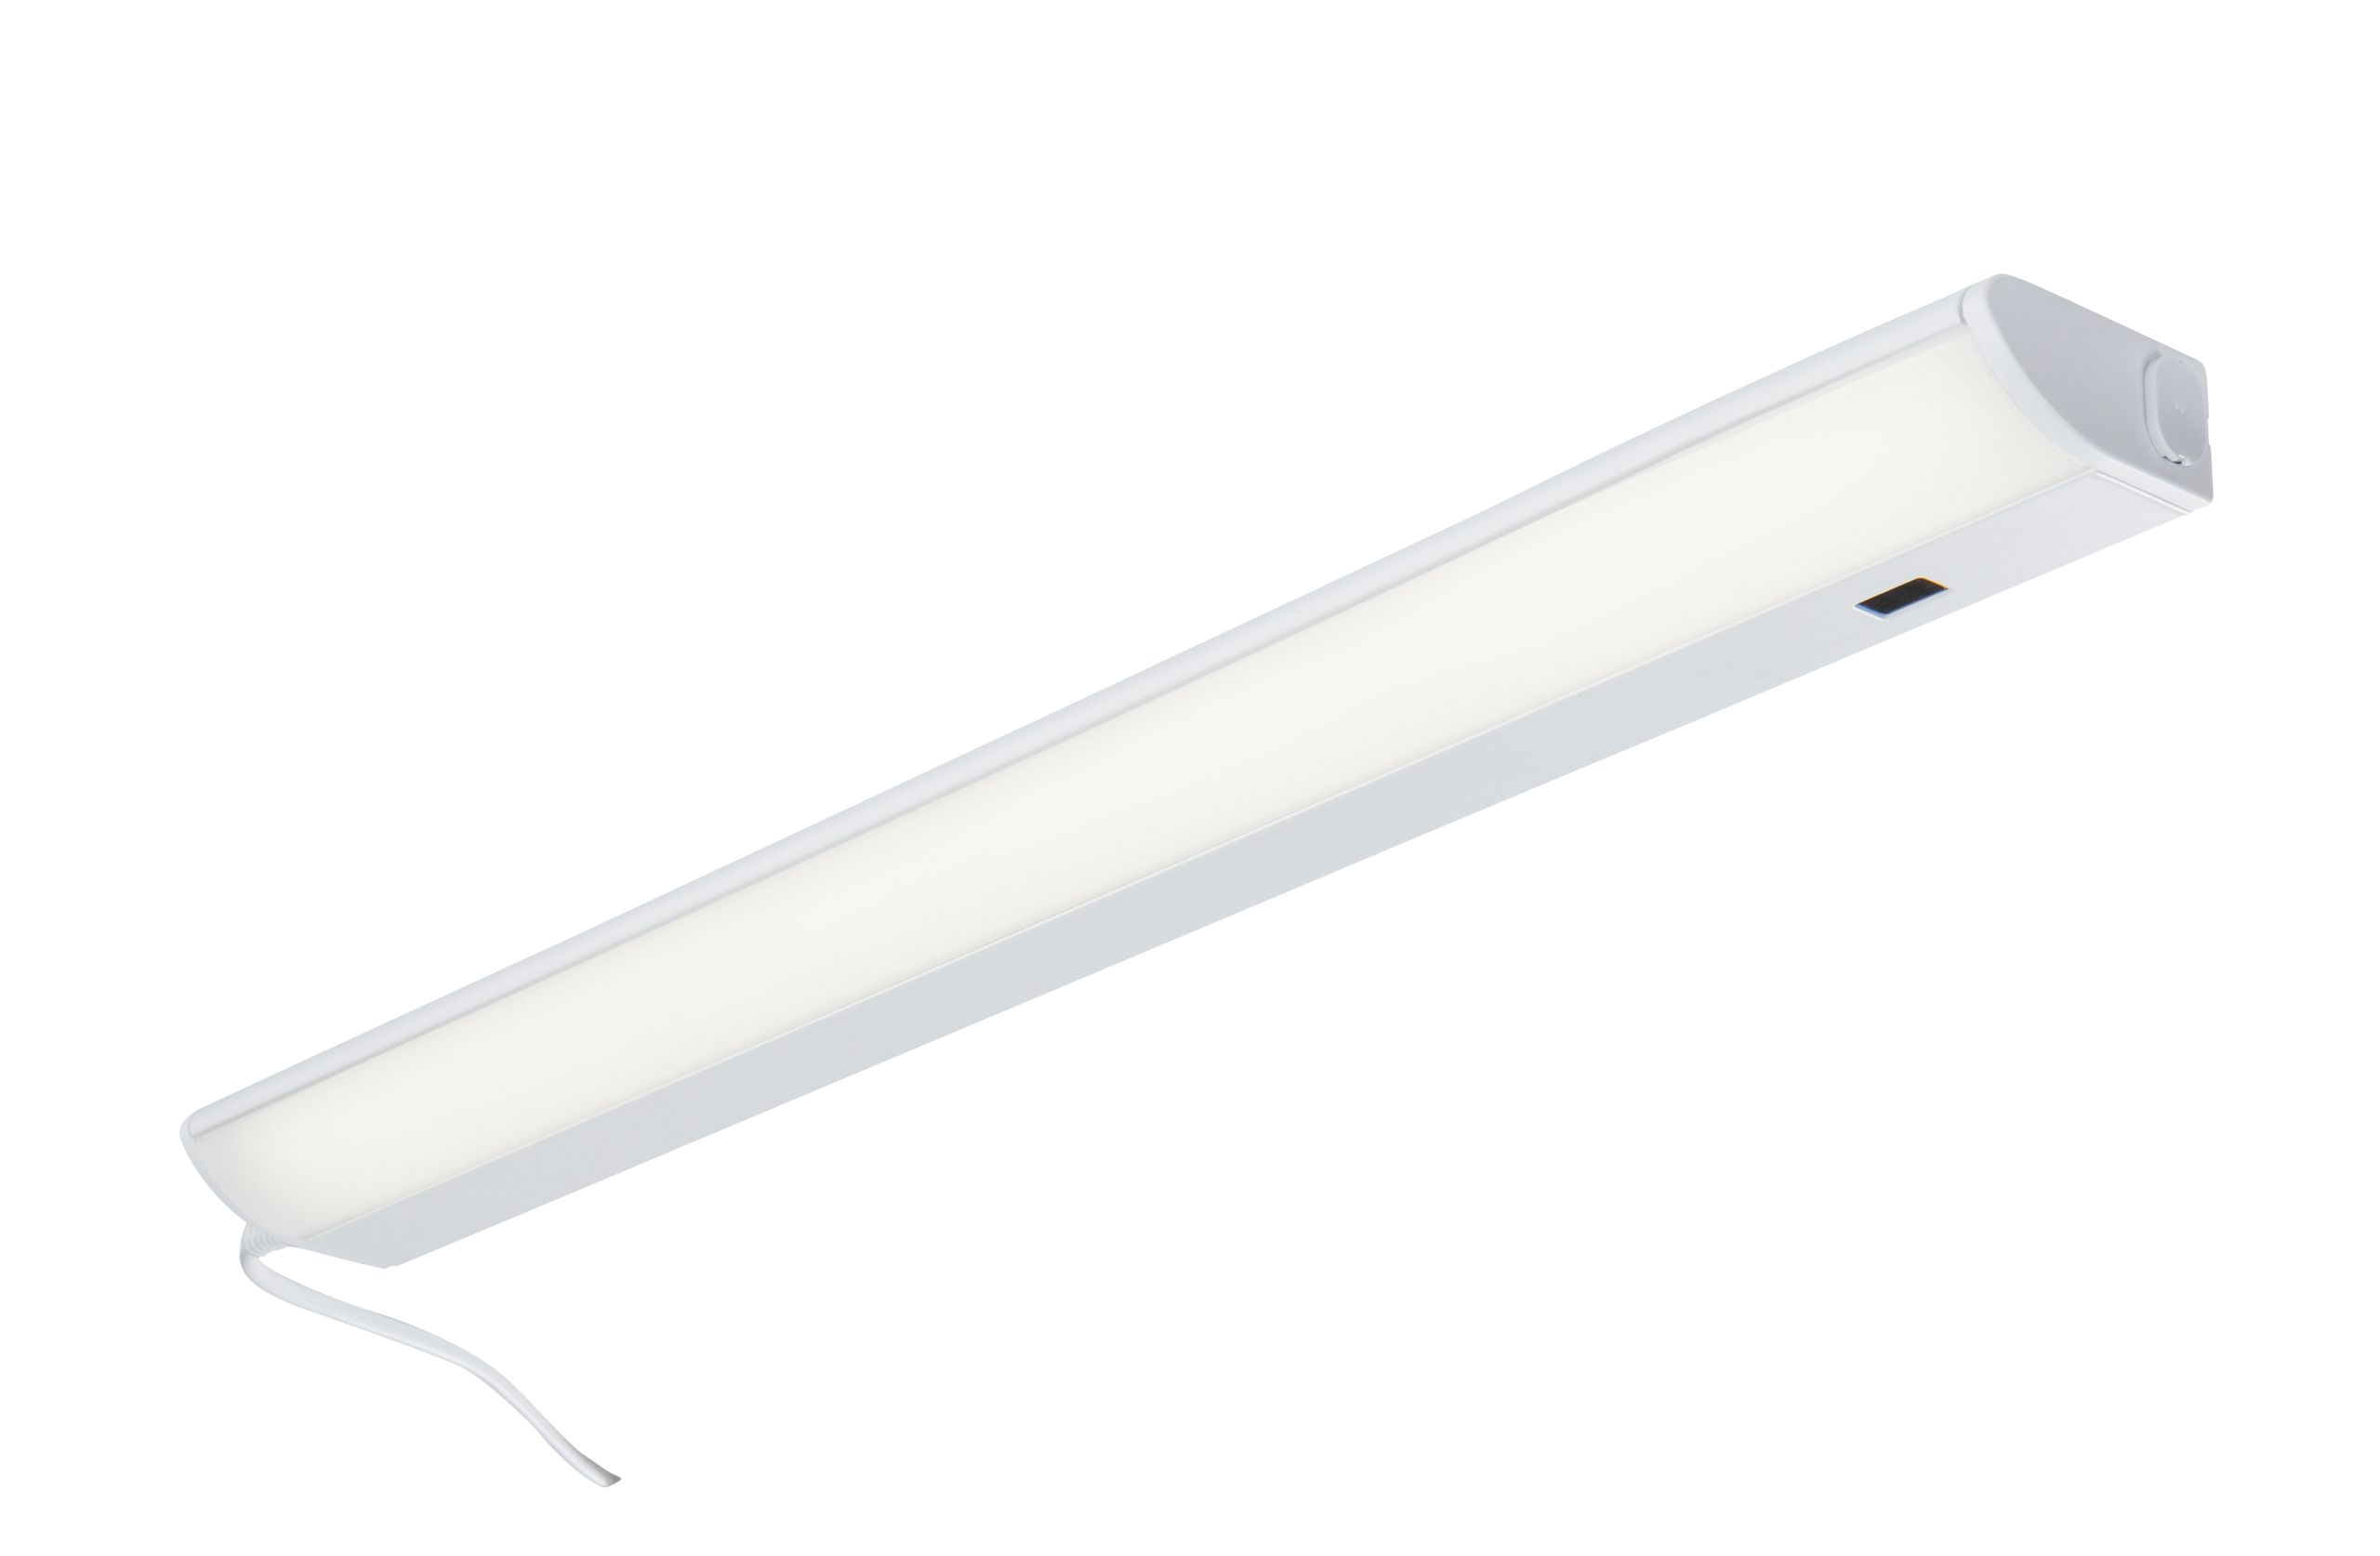 230V 12W LED Linkable Striplight With Motion Sensor (562mm) 4000K - USLED12 